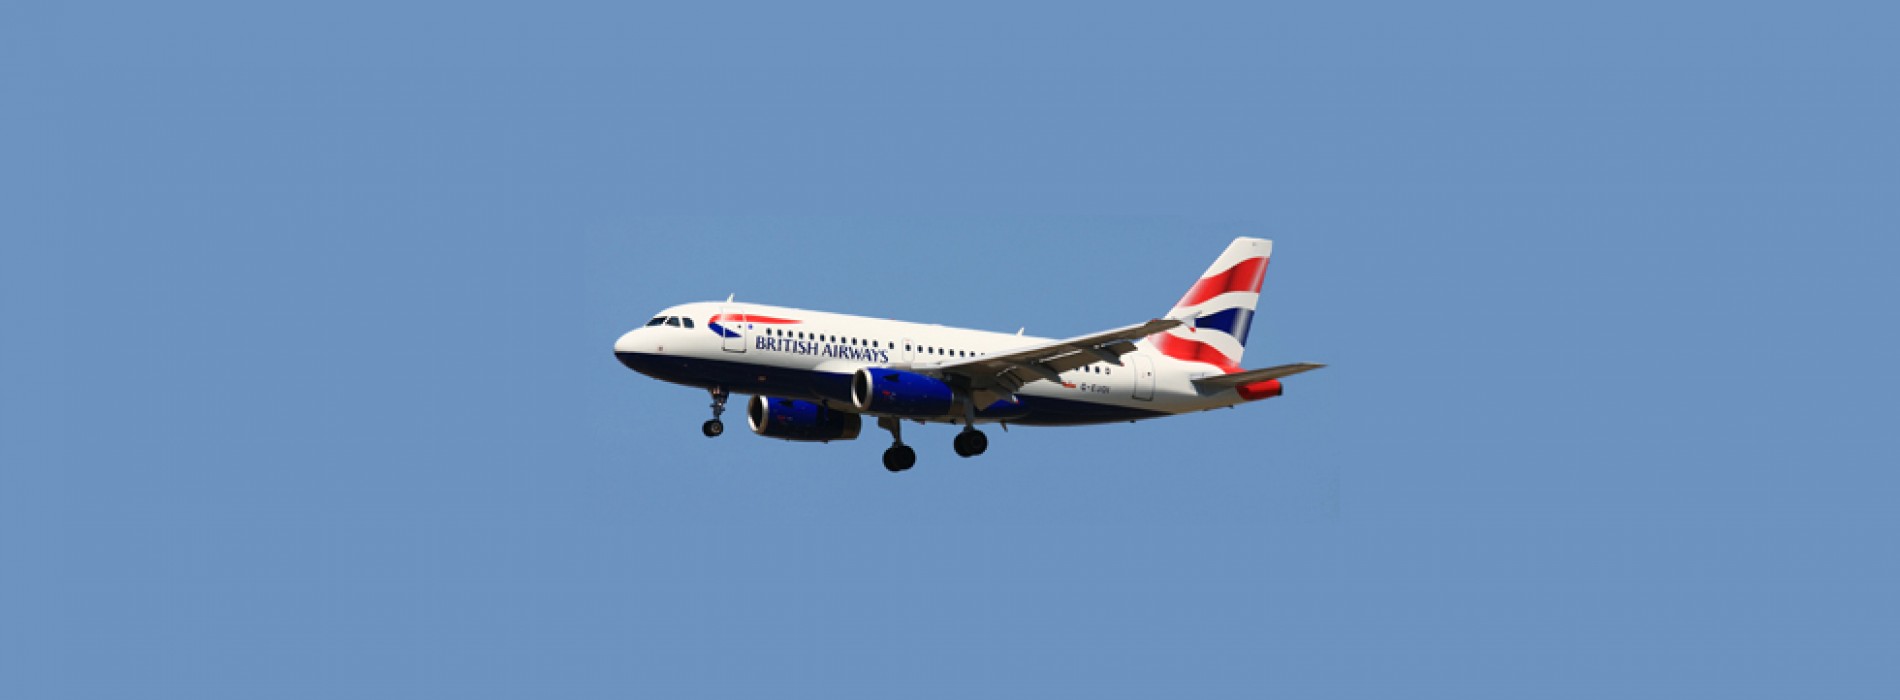 British Airways and Unite meet in London in effort to avoid strike